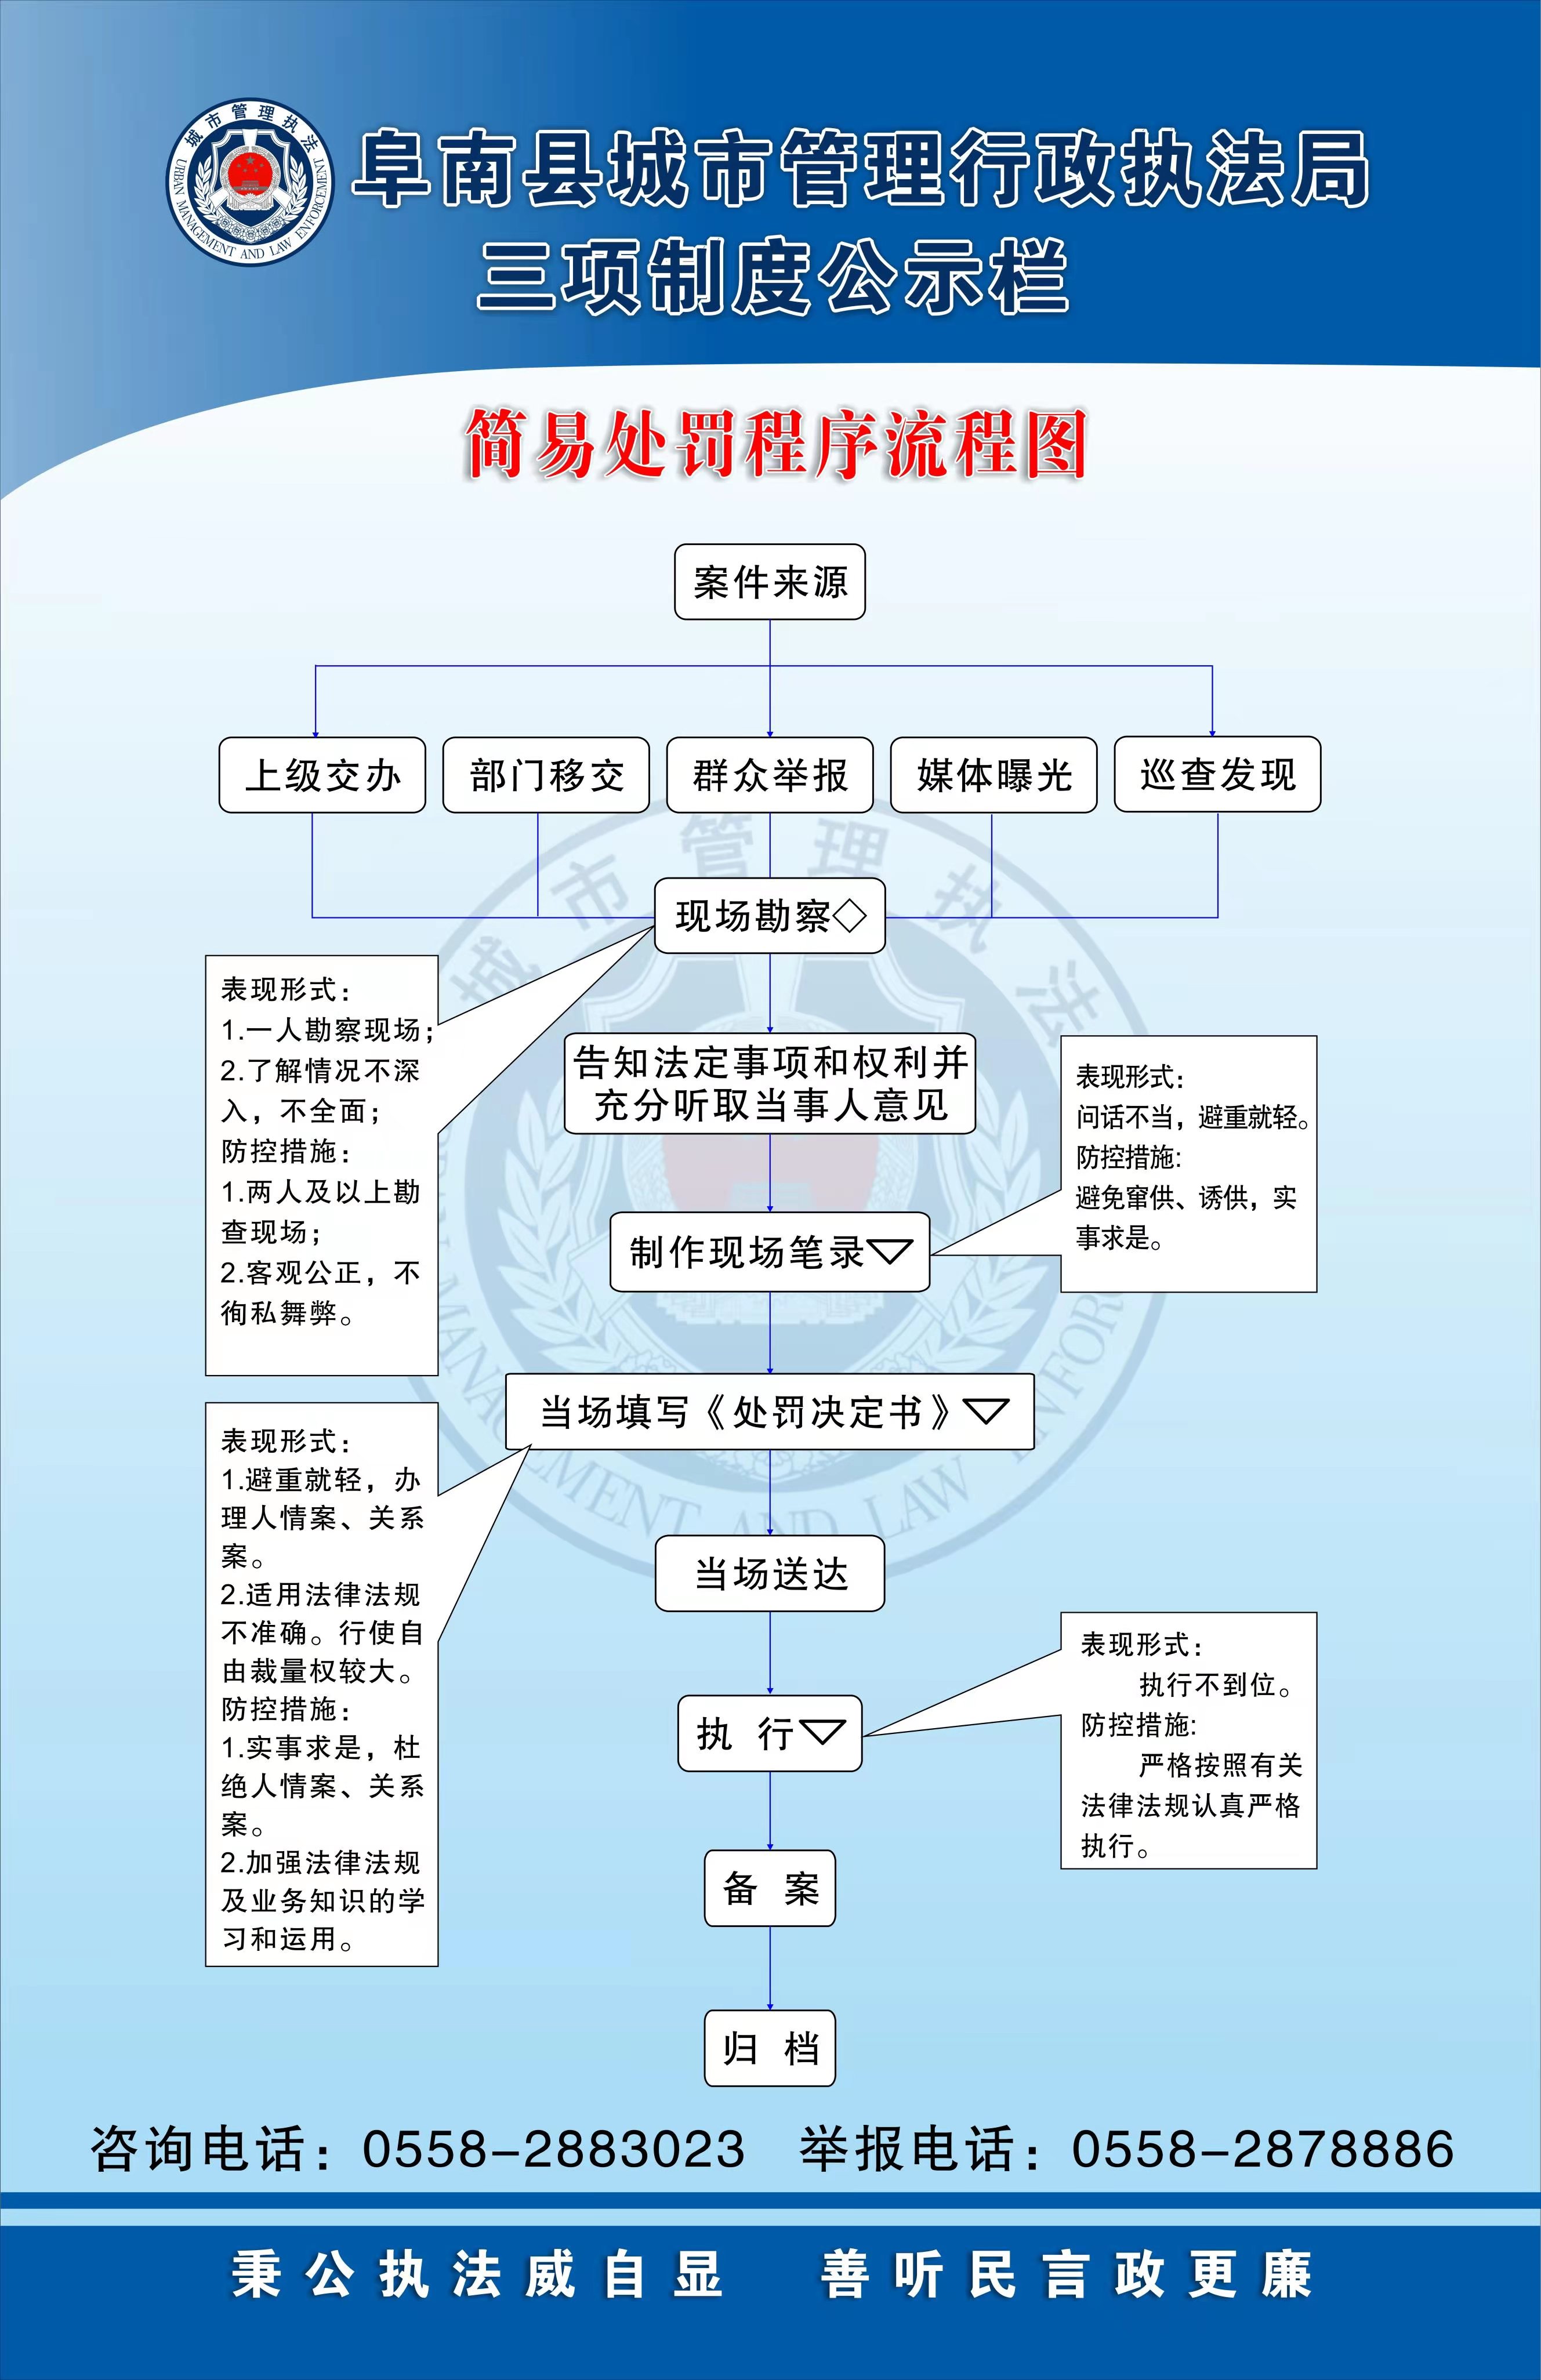 阜南县城市管理行政执法局简易处罚程序流程图